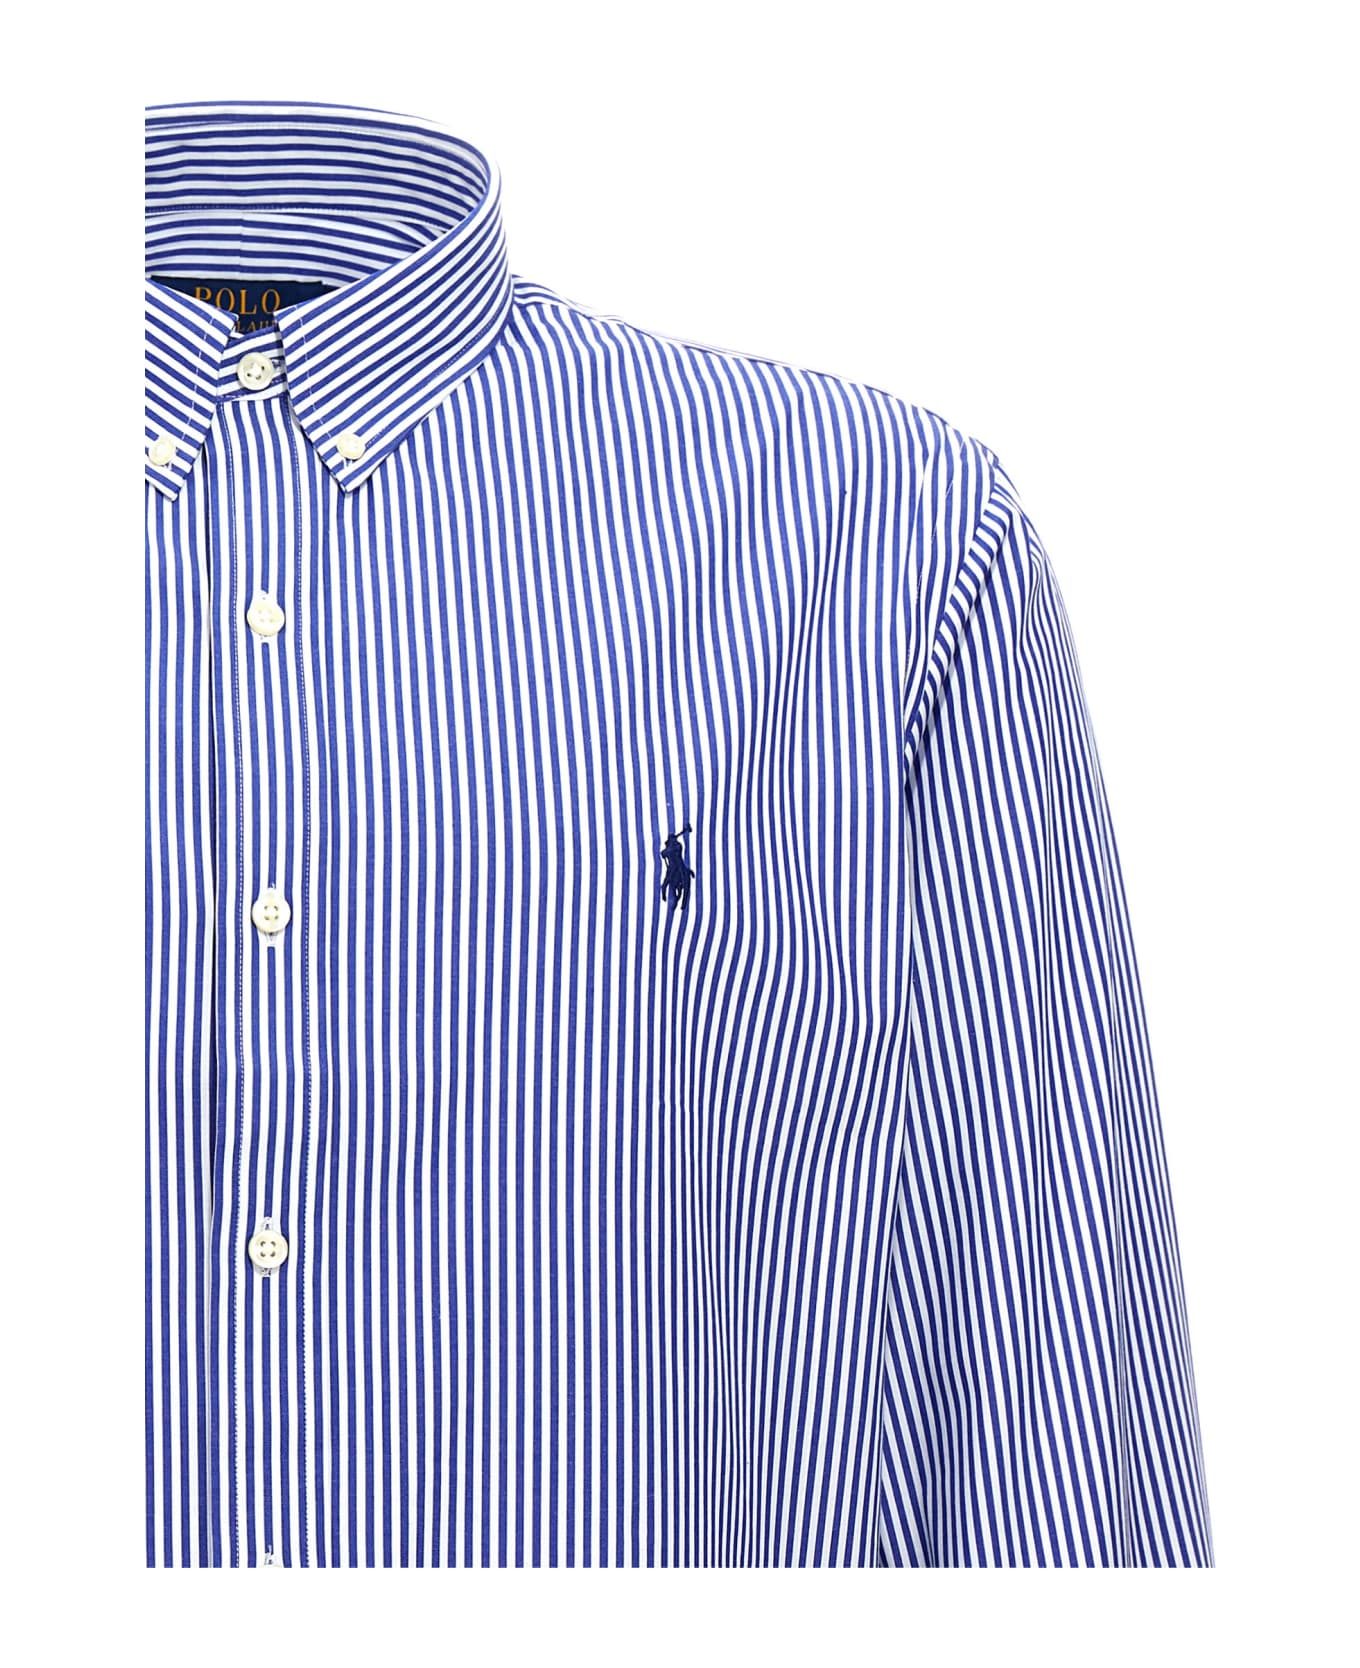 Polo Ralph Lauren 'sport' Shirt Polo Ralph Lauren - WHITE/BLU シャツ